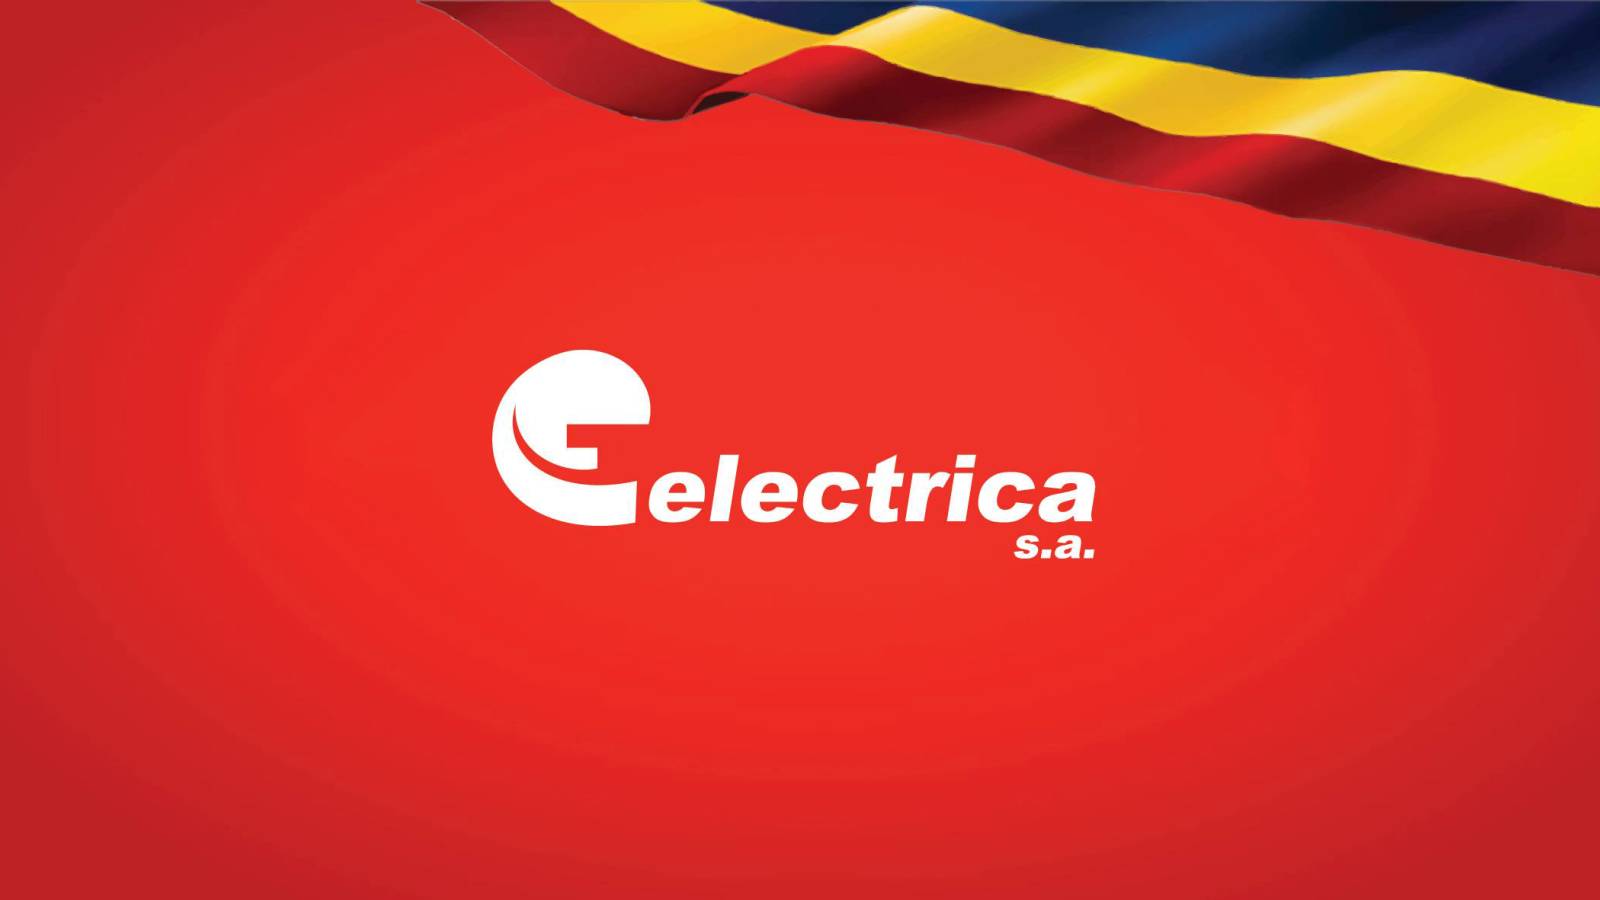 Medidas oficiales de ÚLTIMA HORA ELÉCTRICA anunciadas a los clientes rumanos